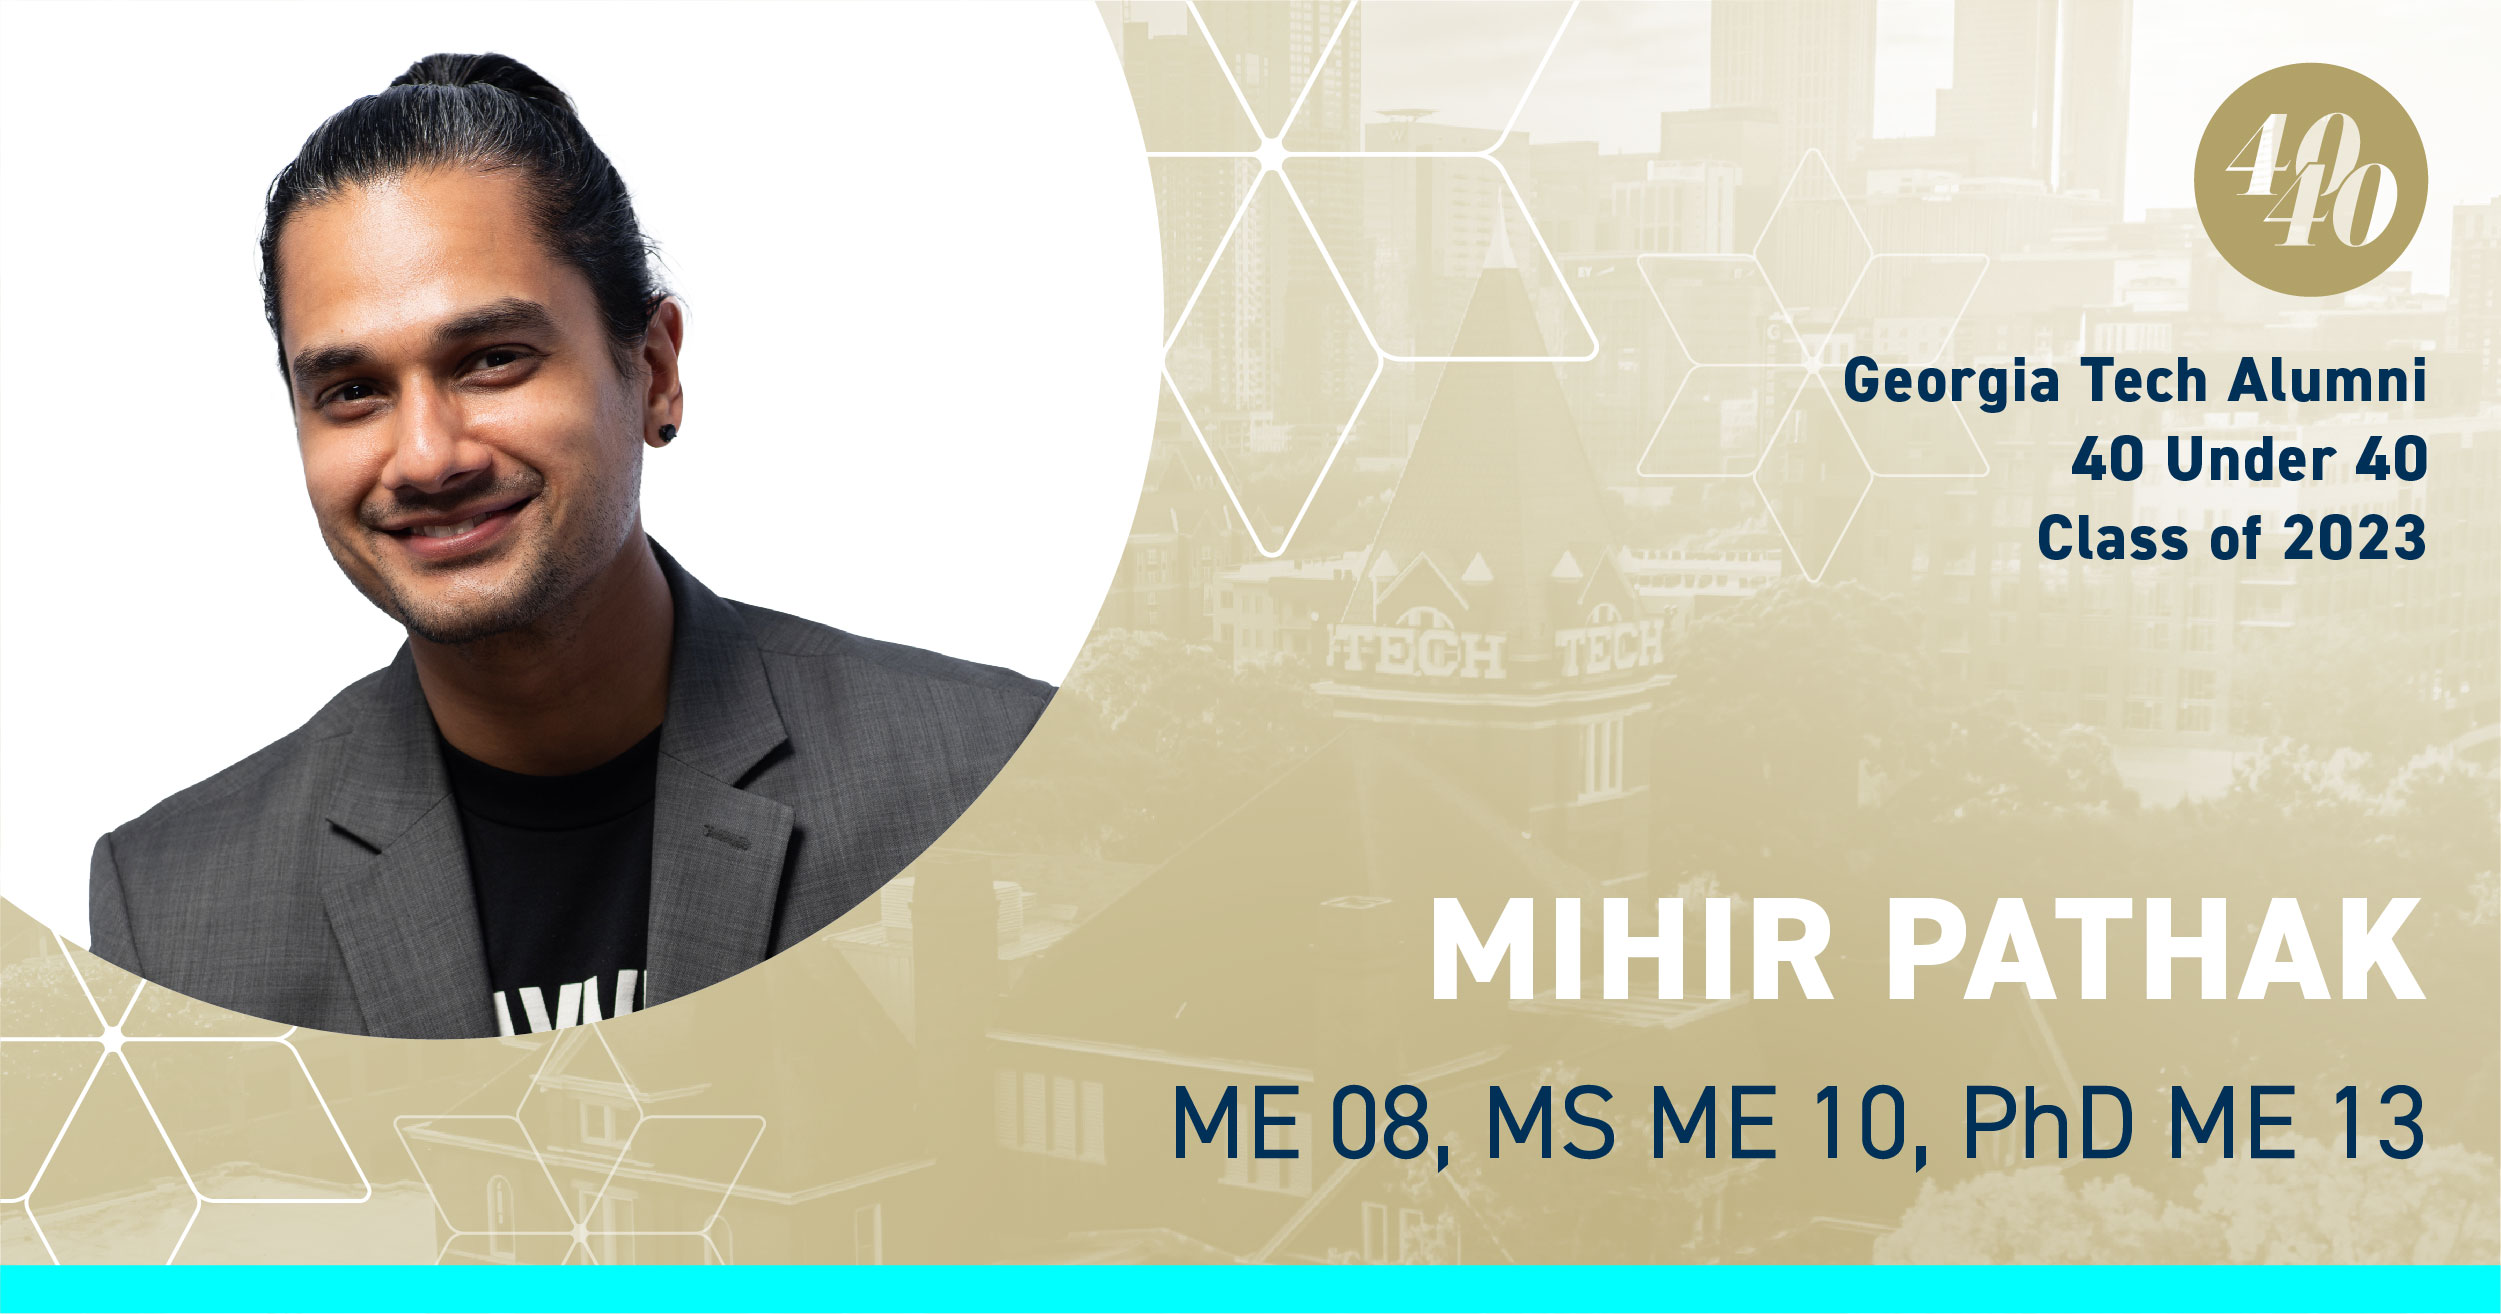 Mihir Pathak, ME 08, MS ME 10, PhD ME 13